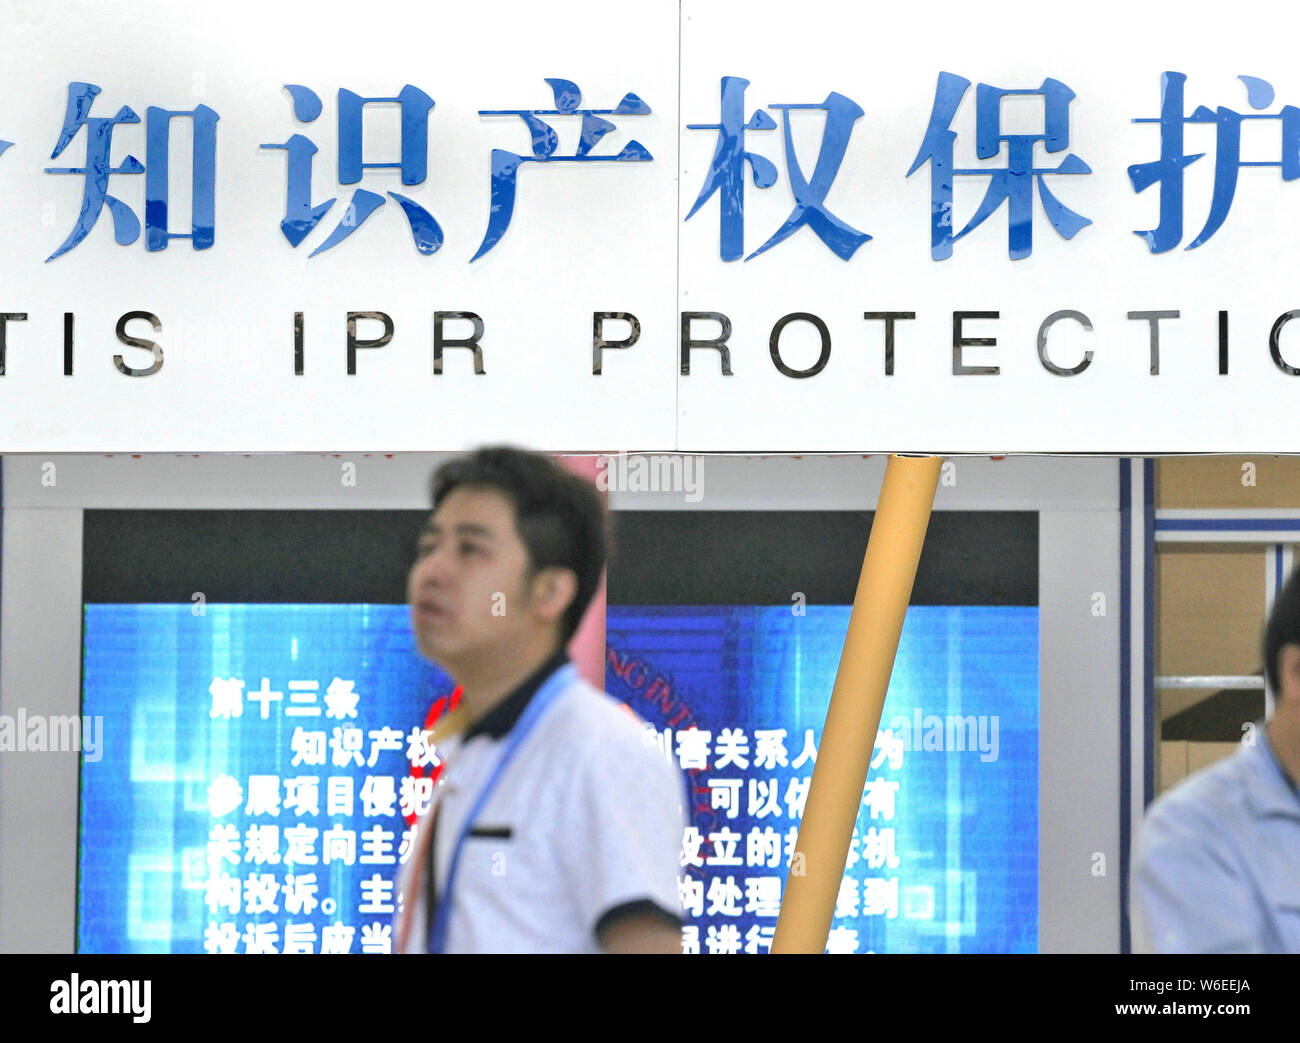 ---- Ein Besucher Spaziergänge Vergangenheit Repräsentant der geistigen Eigentumsrechte (IPR) Schutz während einer Messe in Peking, China, 29. Mai 2016. Chines Stockfoto